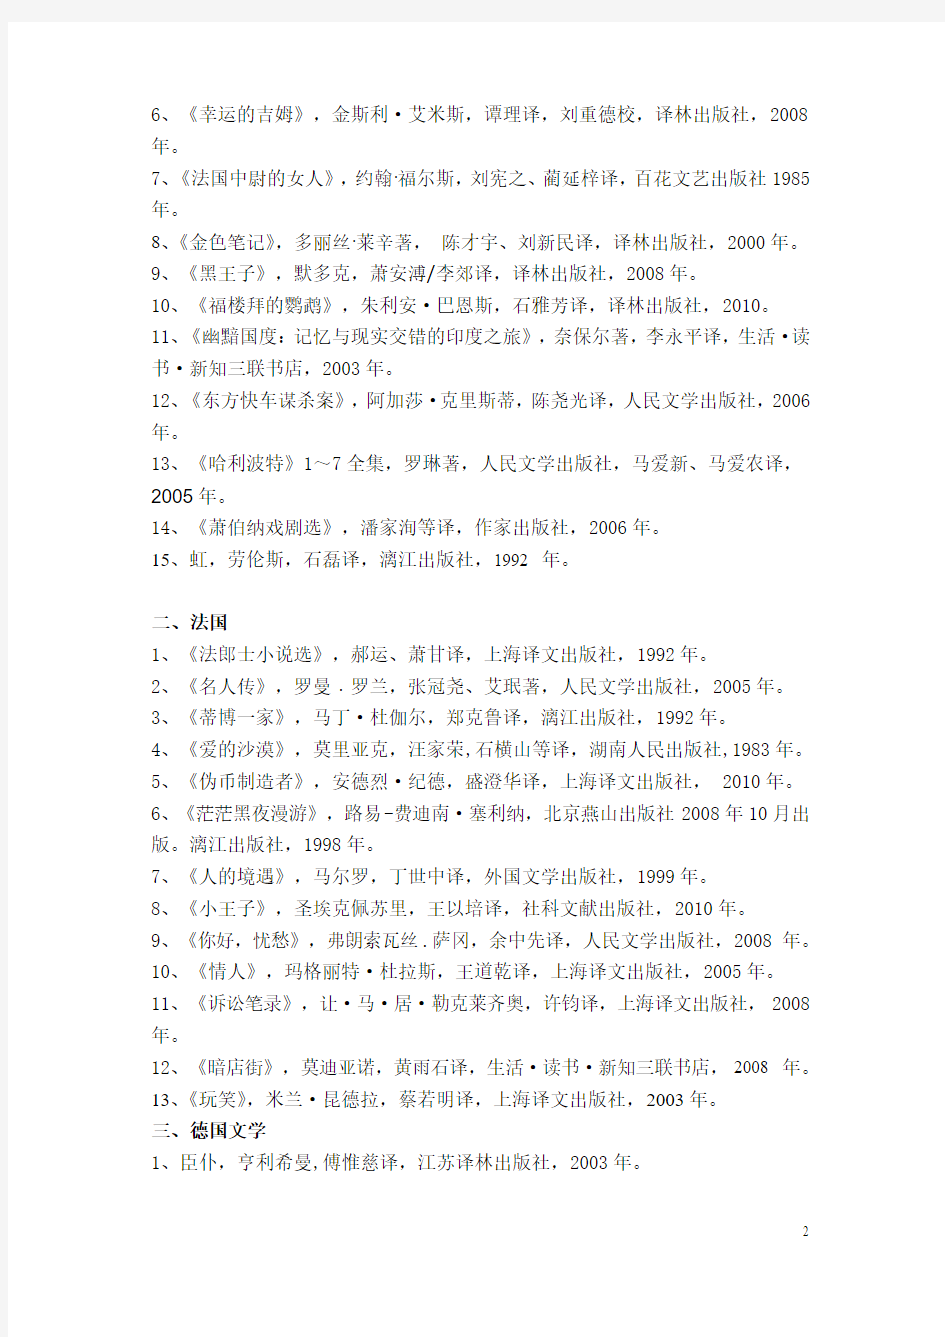 中文系2010级外国文学(三)汇总书目